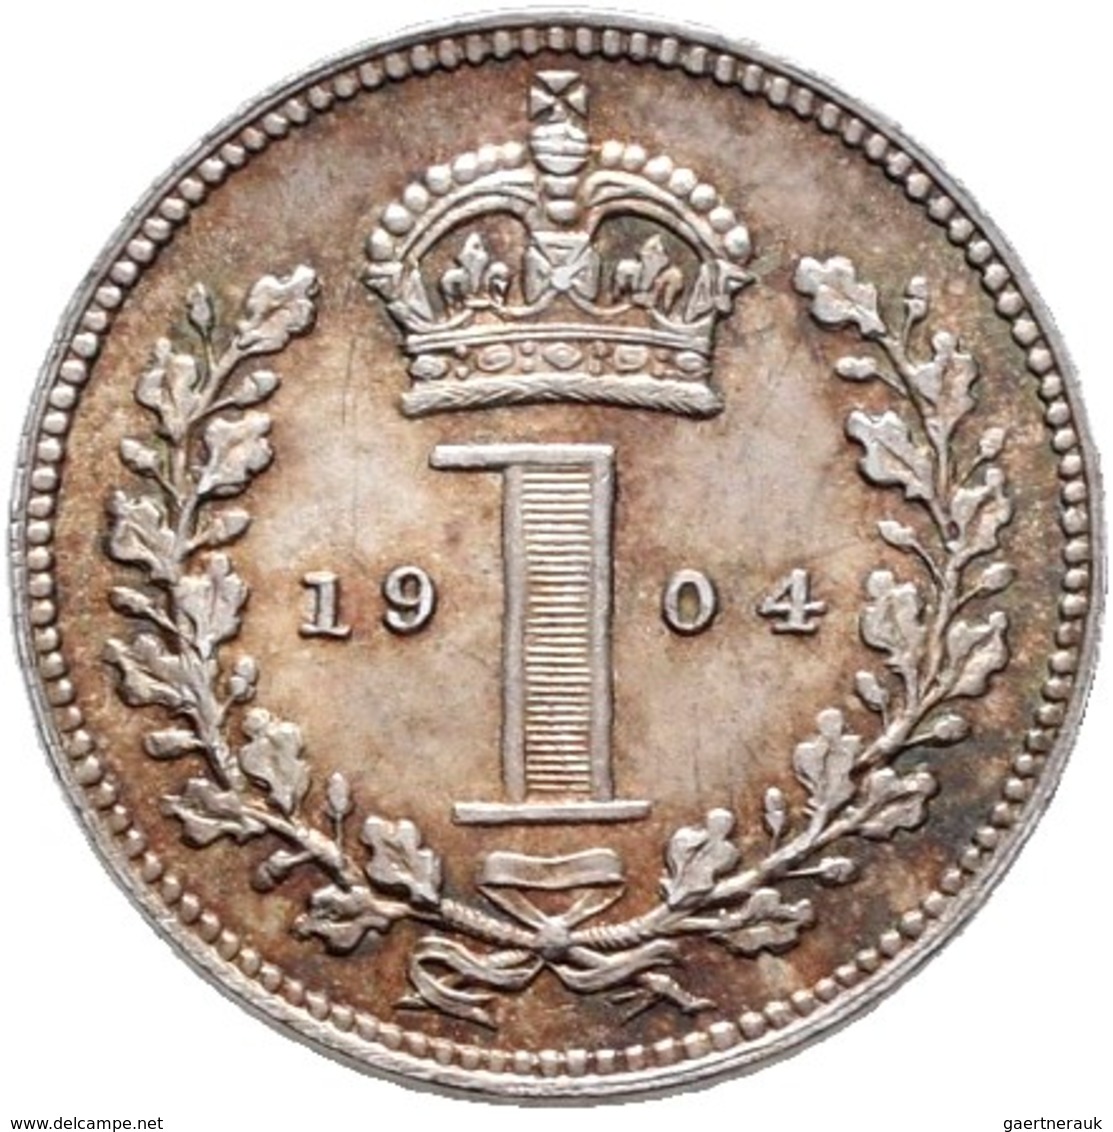 Großbritannien: Edward VII. 1901-1910: Maundy Set 1,2,3,4 Pence 1904, vorzüglich, vorzüglich-Stempel